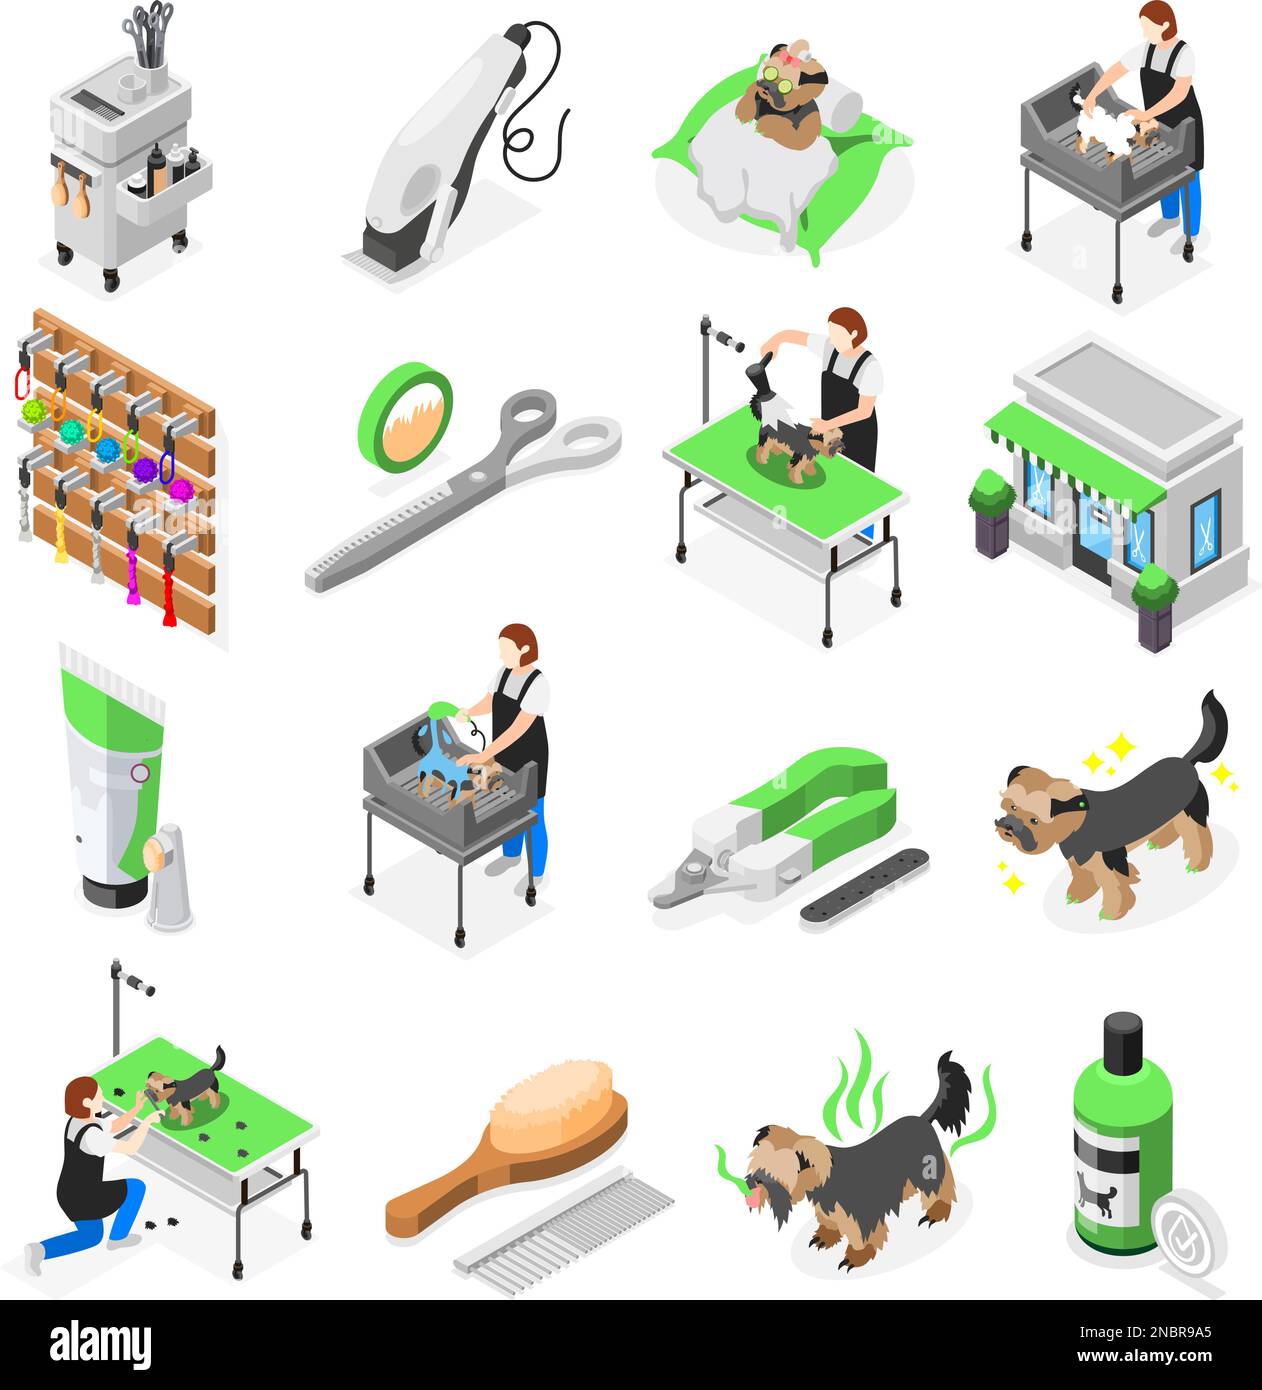 Salon de toilettage ensemble isométrique d'icônes isolées avec des outils pour laver la taille en prenant soin des animaux illustration vectorielle Illustration de Vecteur